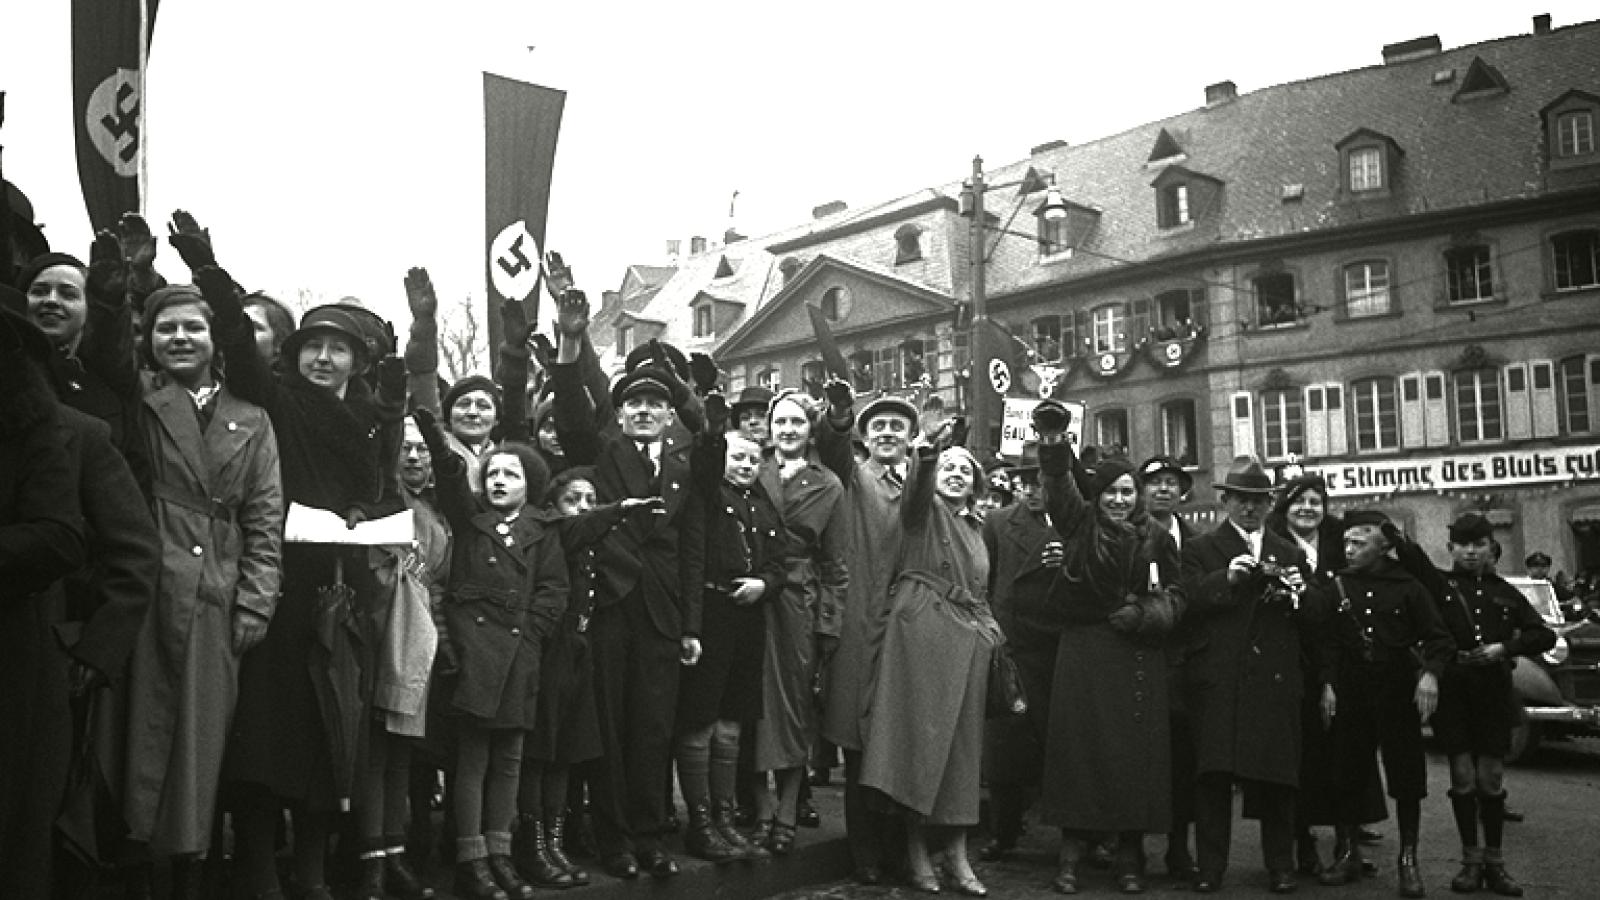 Jubel beim Besuch der NSDAP-Führung